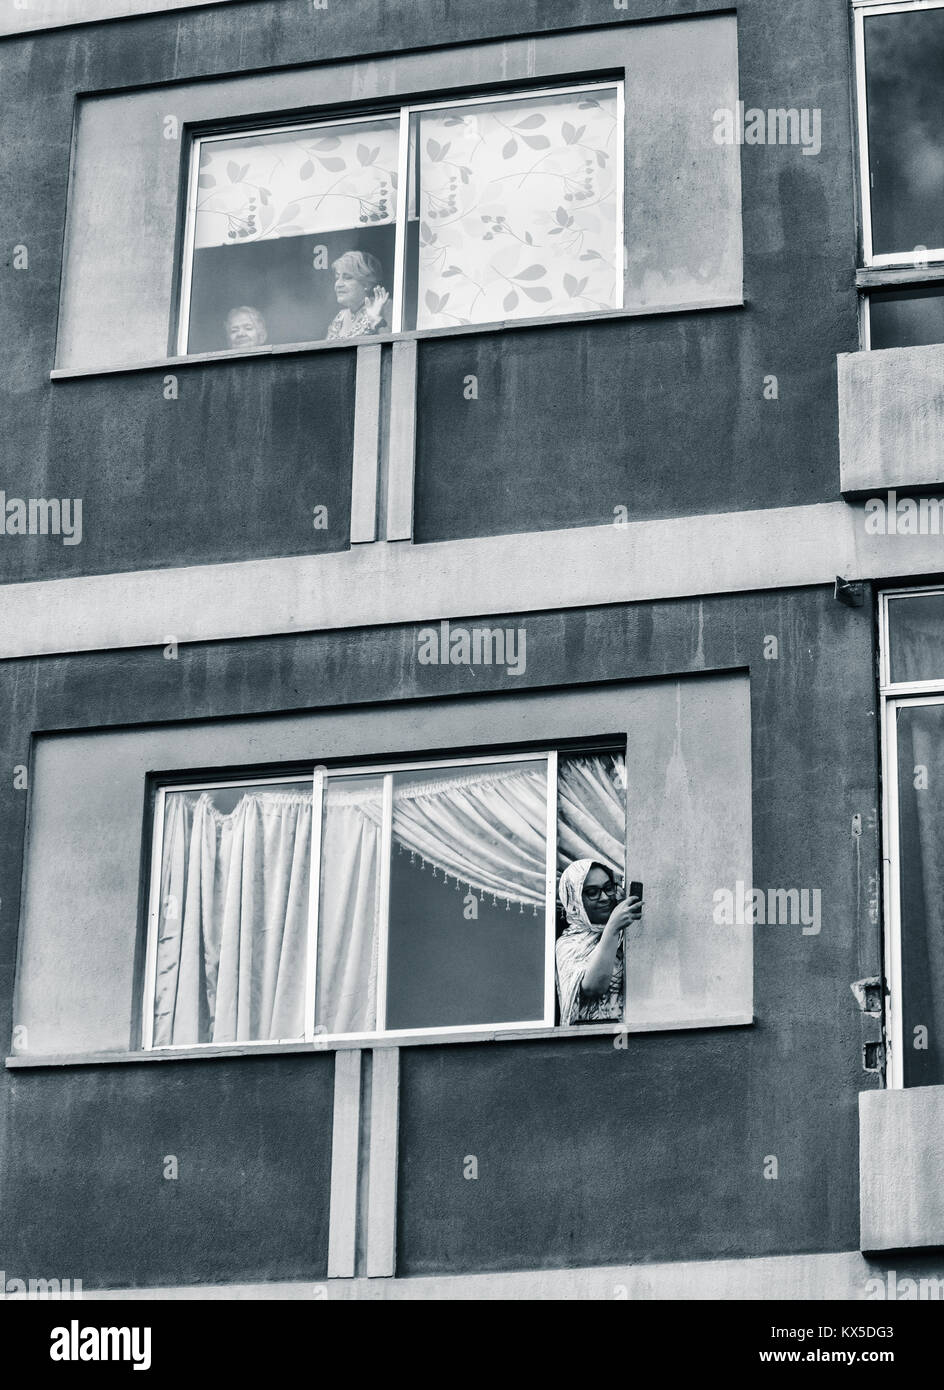 Donna con il telefono cellulare appoggiato fuori dalla finestra in Spagna. Coronavirus, autoisolamento, distanza sociale, quarantena... concetto Foto Stock